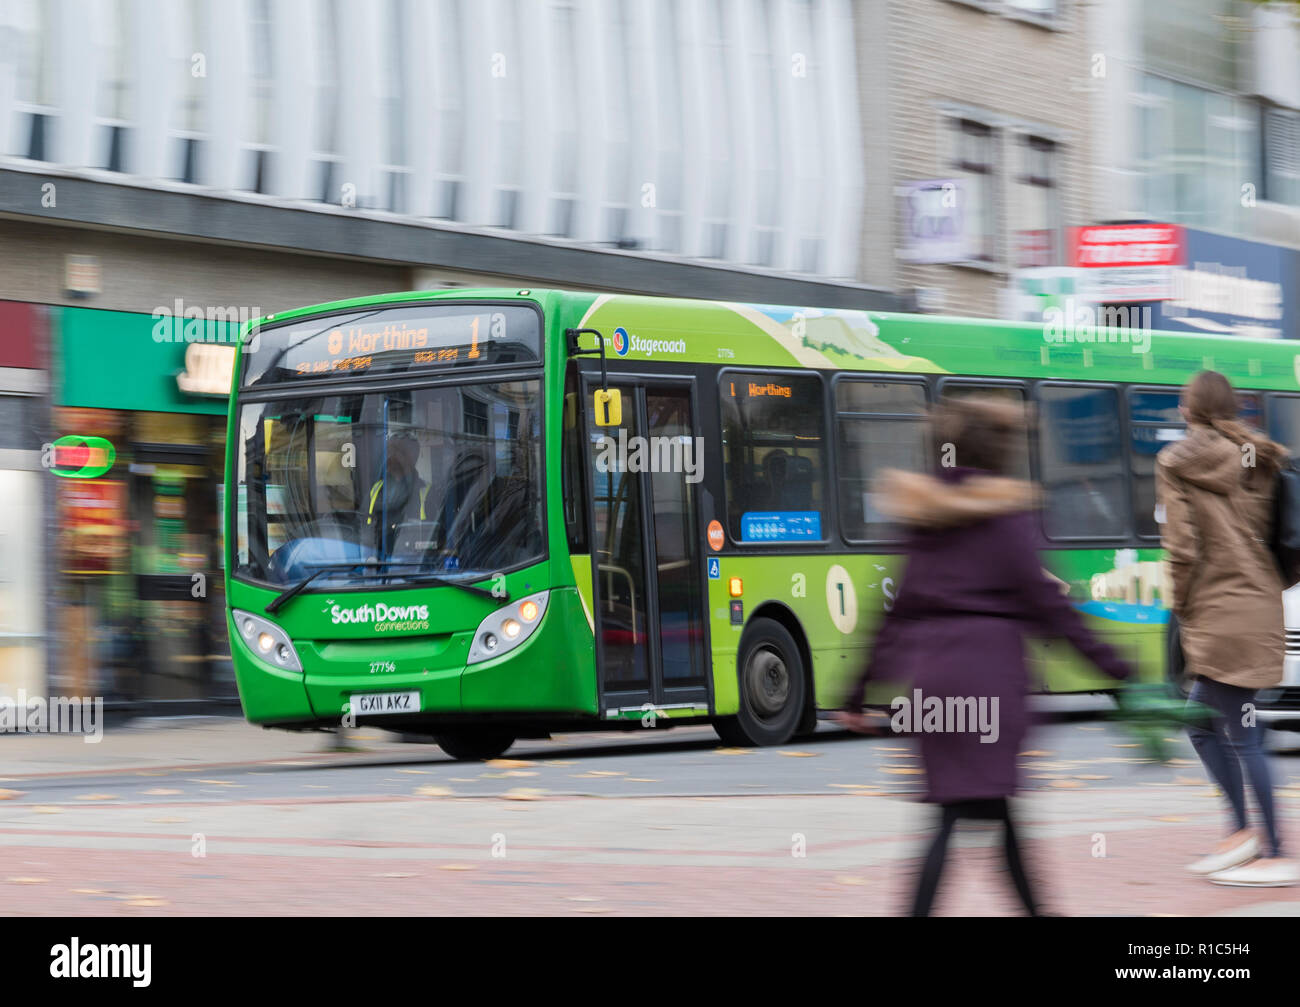 Stagecoach South Downs Verbindungen grüne Bus Nummer 1 mit Motion Blur in einer belebten Hauptstraße in Worthing, West Sussex, England, UK. Travel Concept. Stockfoto